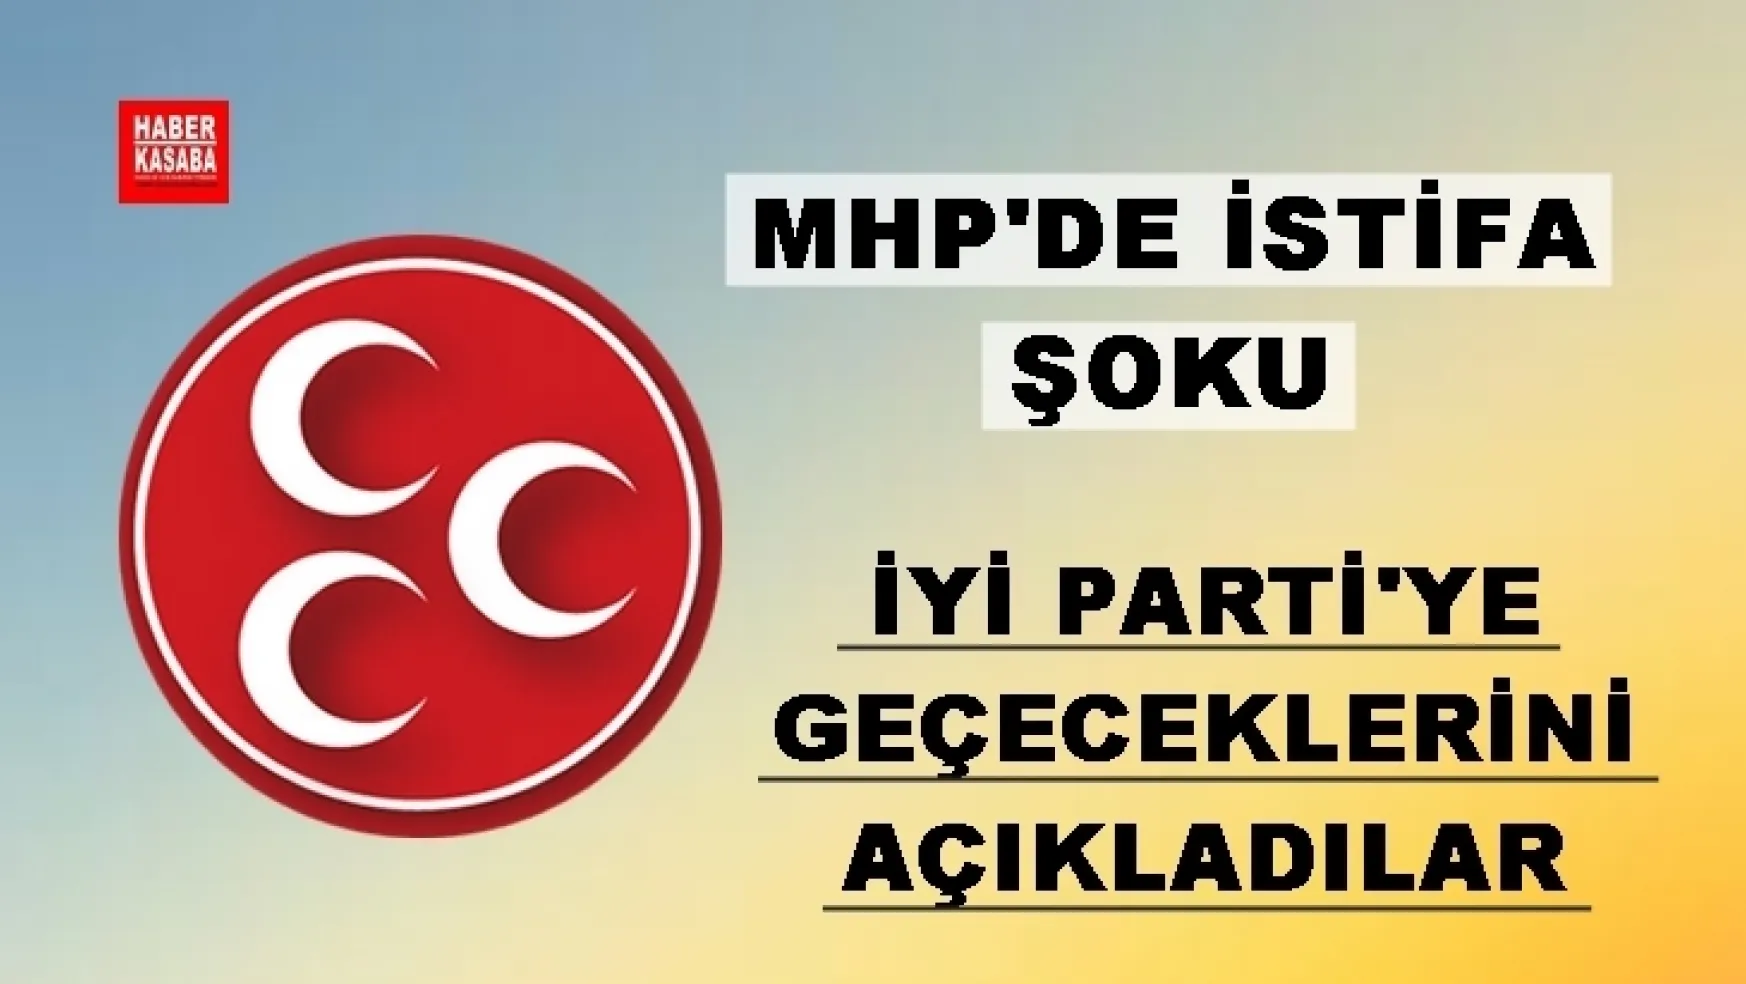 MHP'de 150 istifa daha ! İYİ Parti'ye geçeceklerini açıkladılar